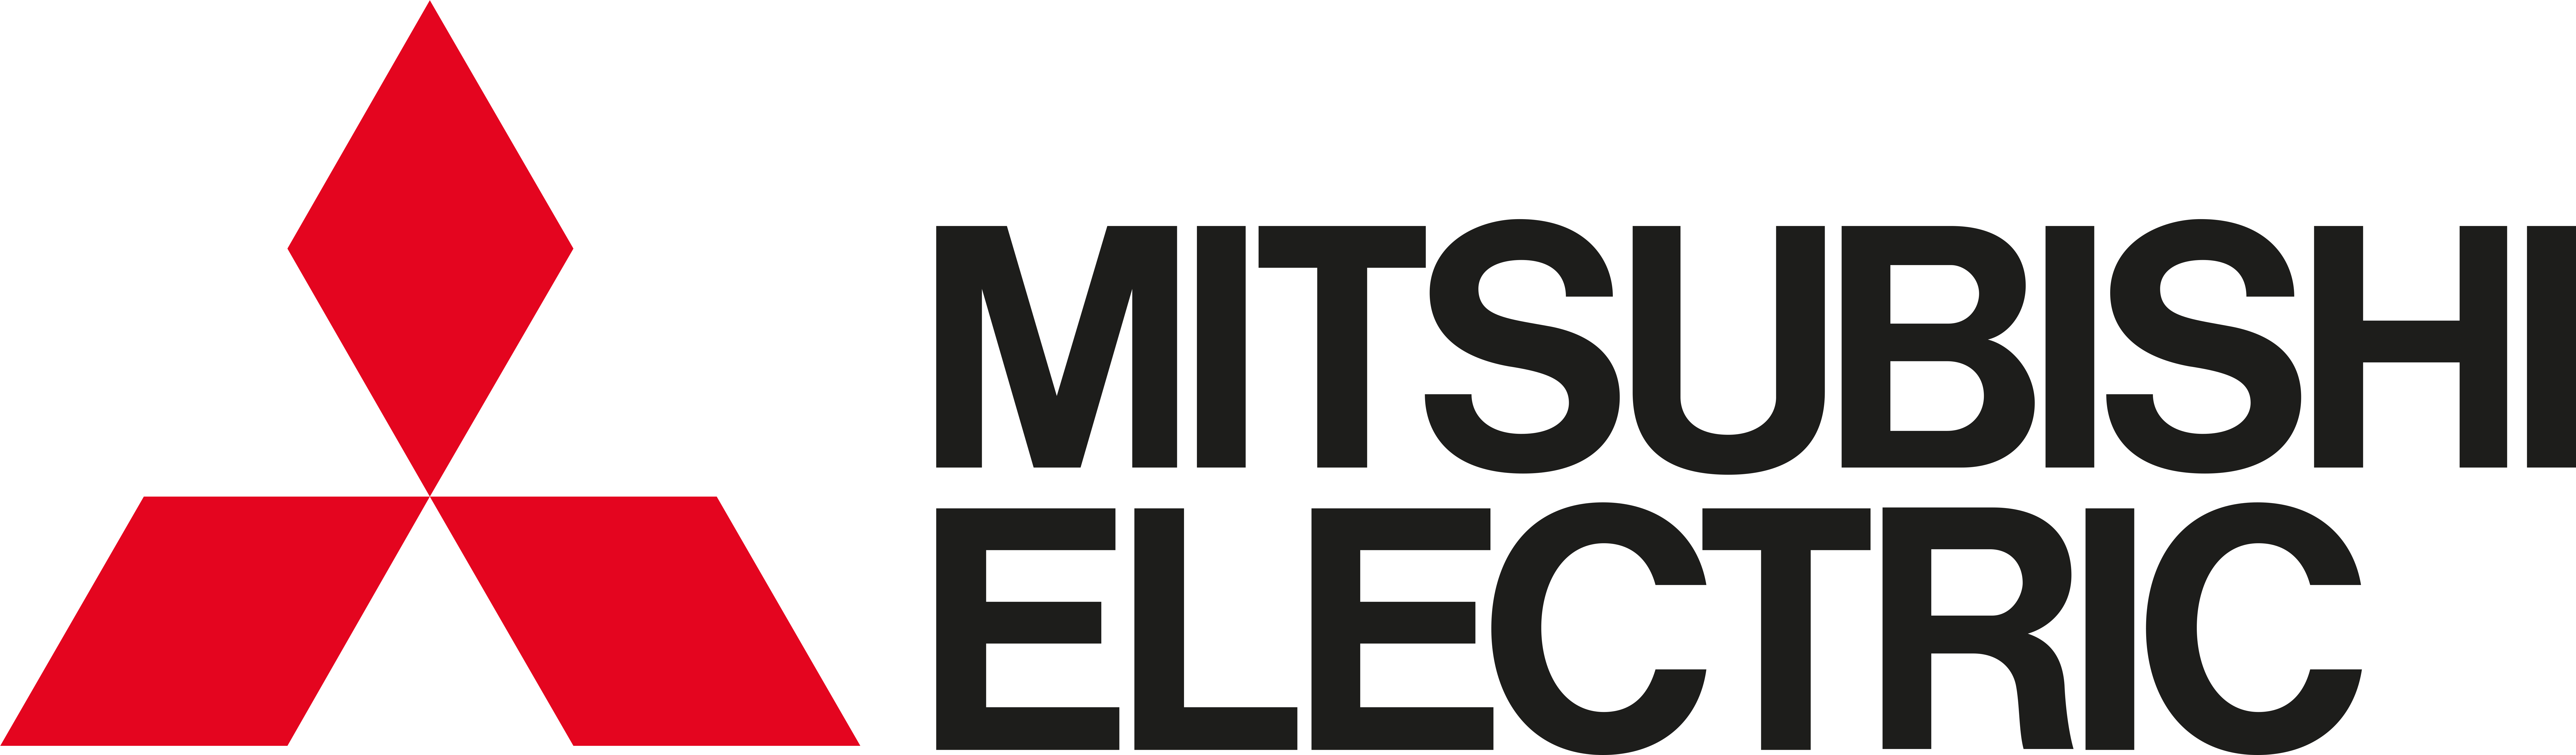 Mitsubishi Electric Logo PNG image